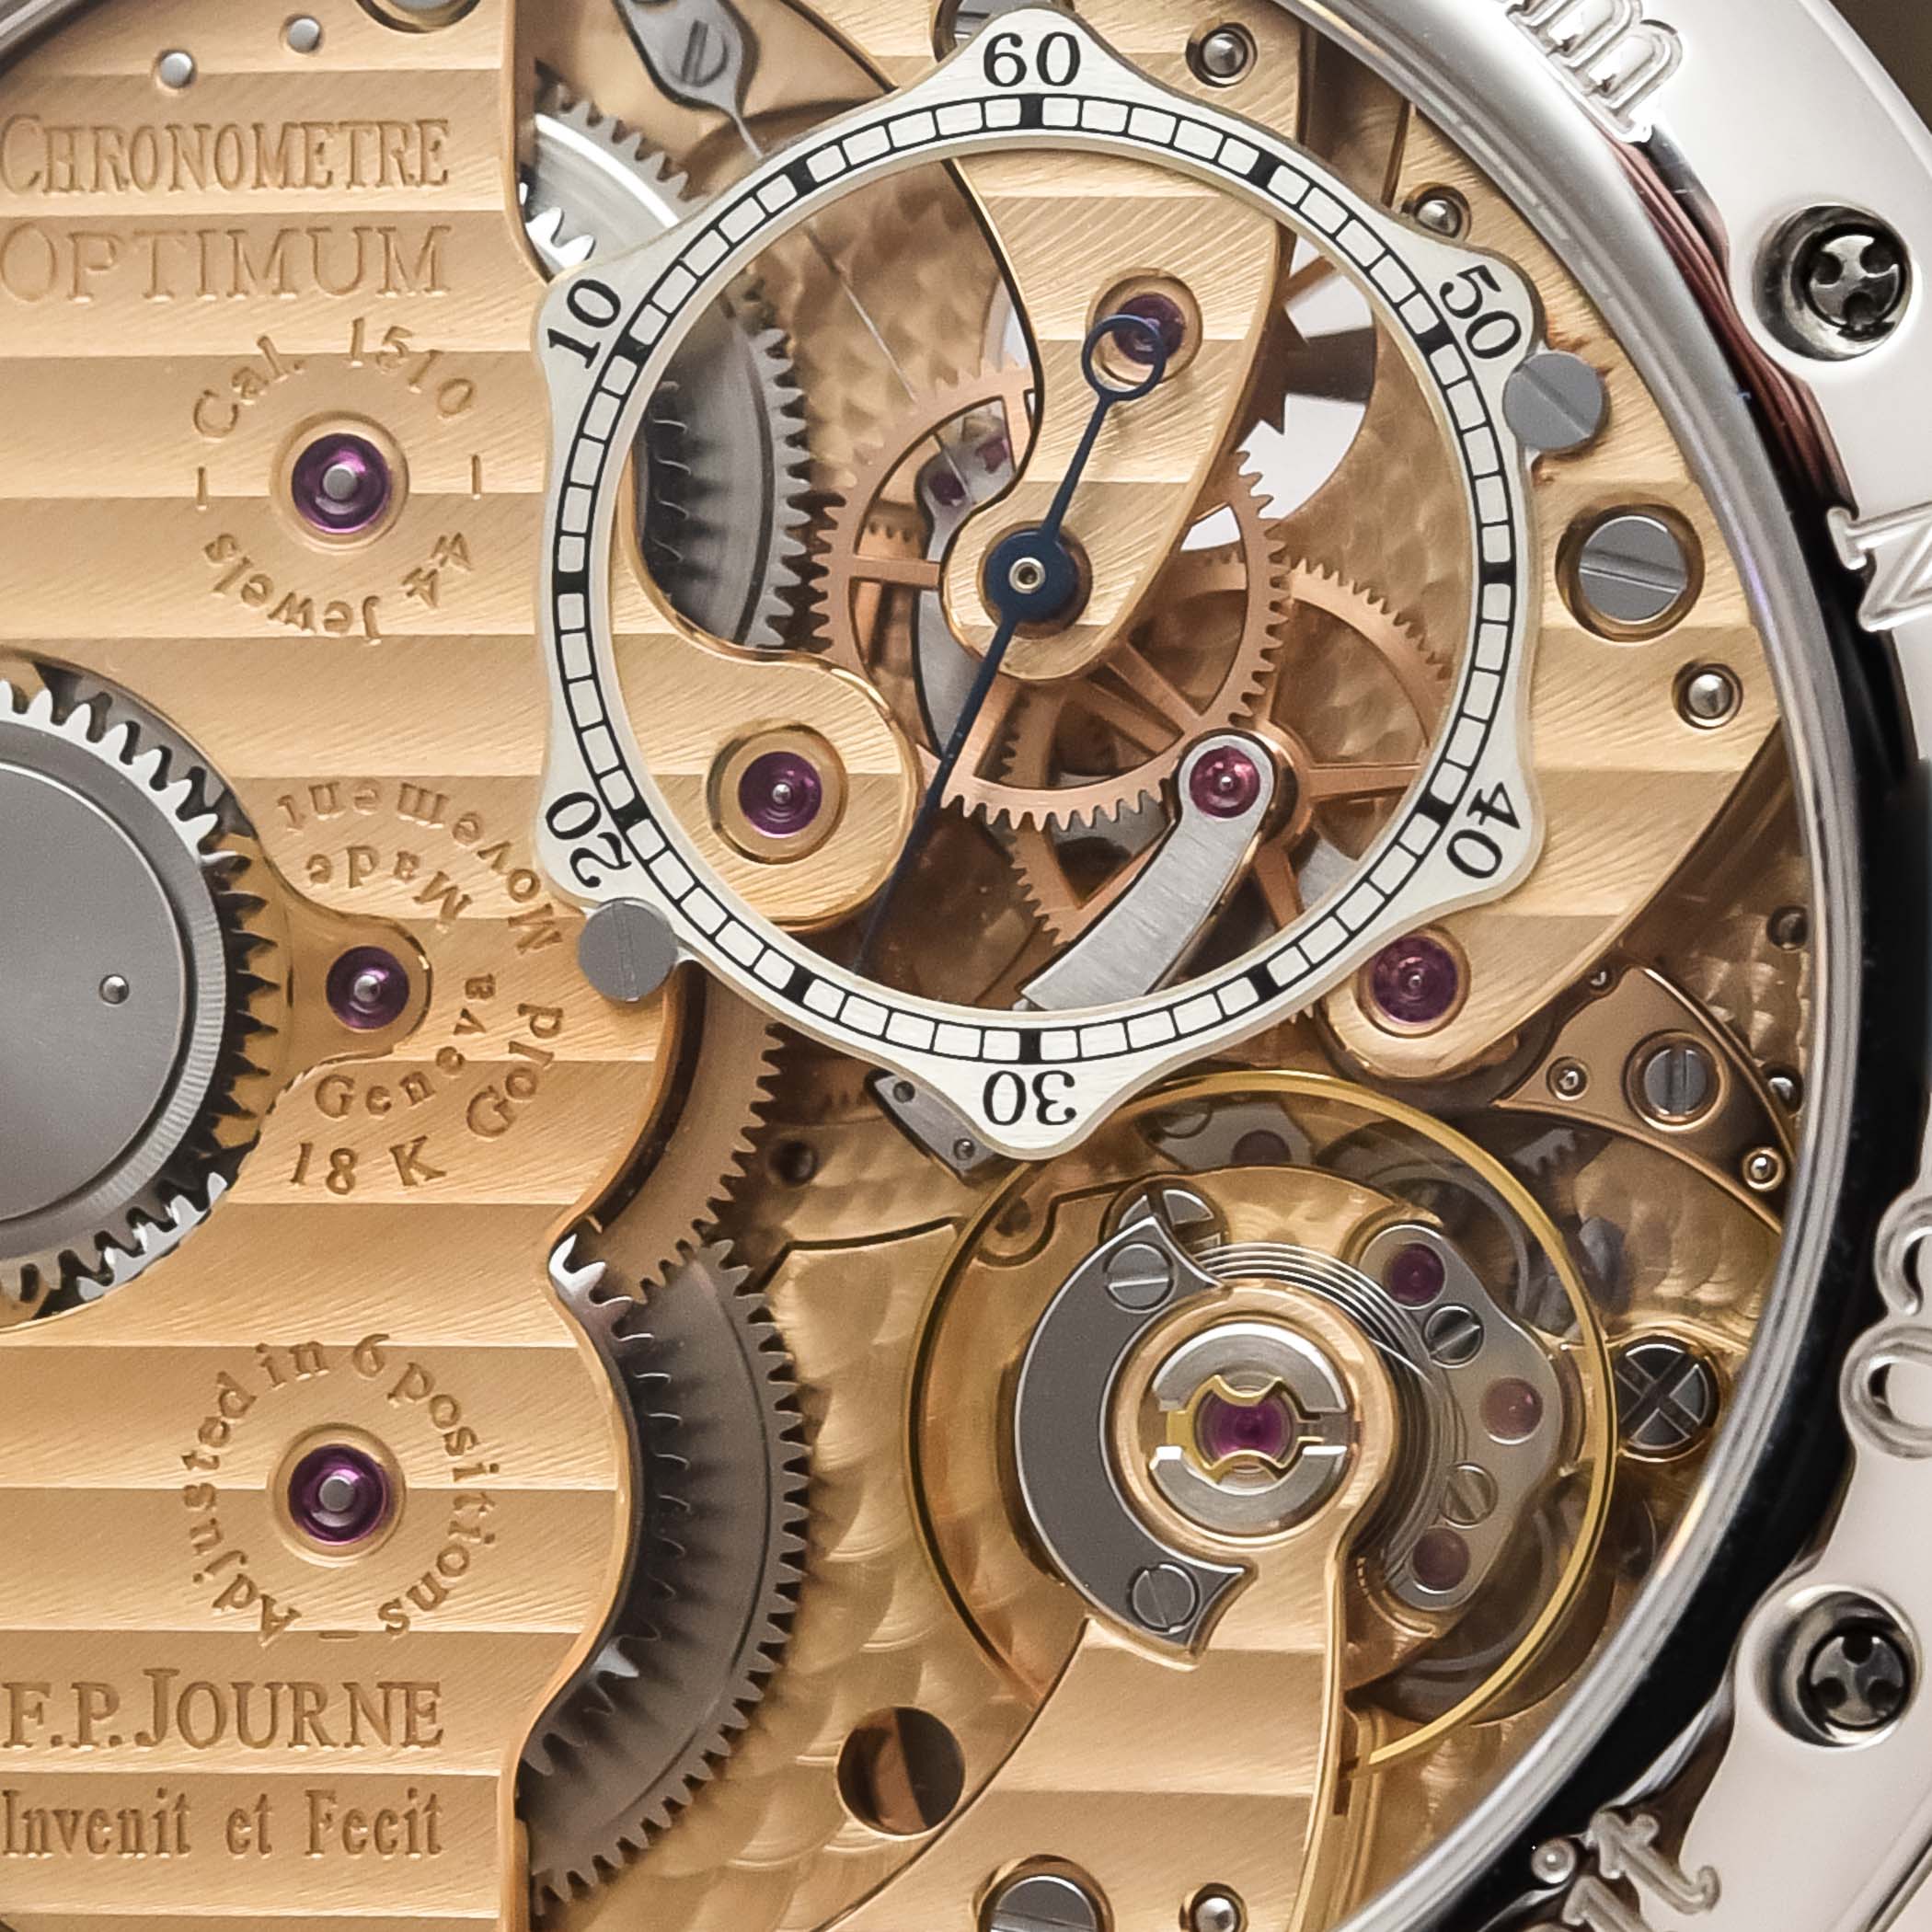 Потрясающая модель часов F.P. Journe Chronomètre Optimum